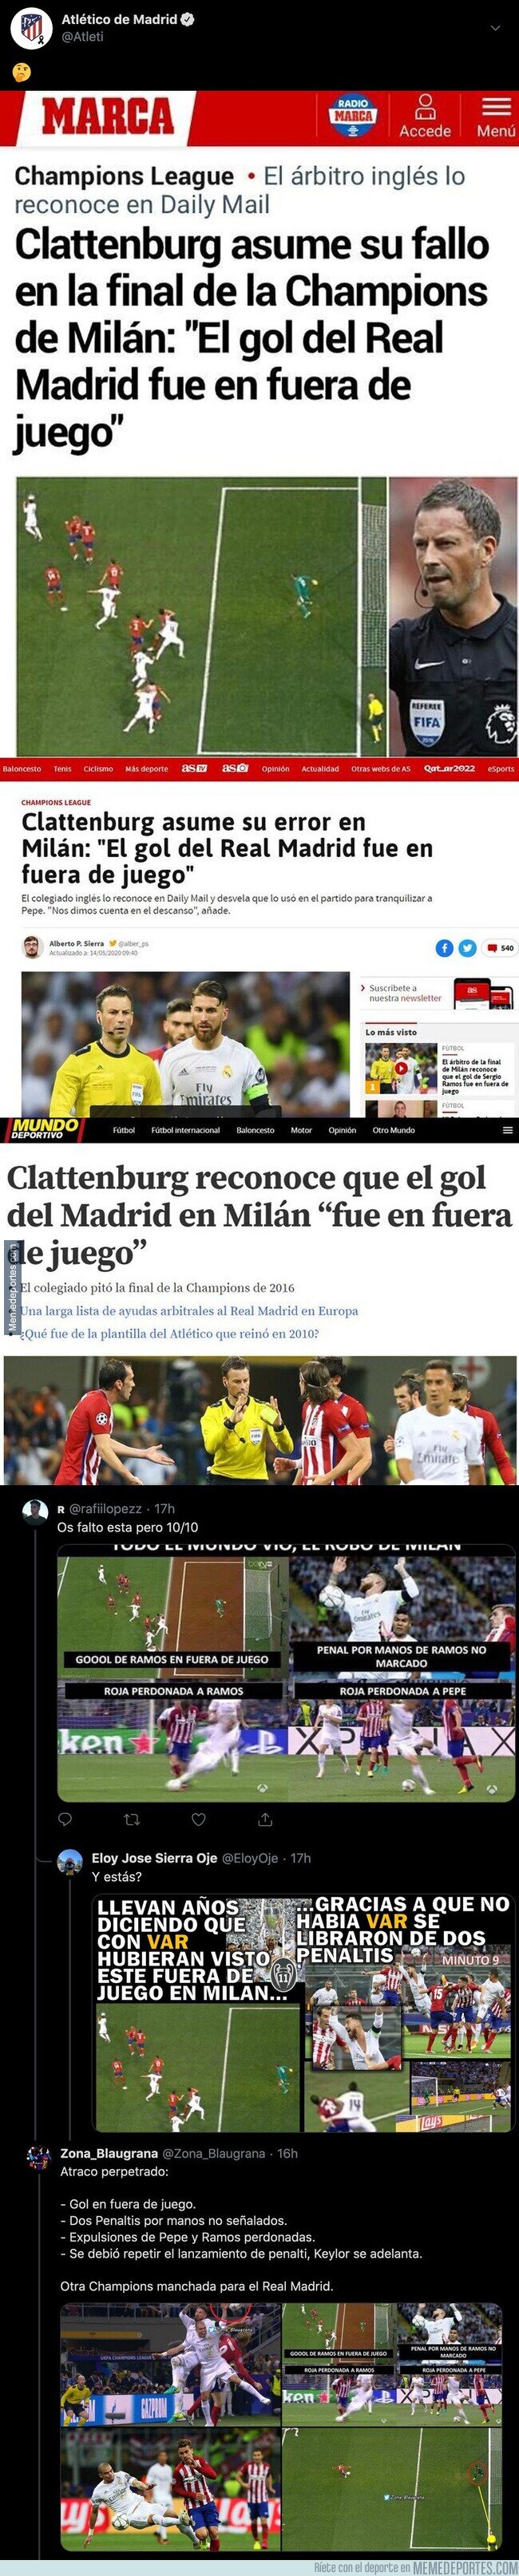 1104498 - El descomunal tuit del Atleti sobre unas declaraciones de Clattenburg por la final de Champions contra el Real Madrid que admite que el Madrid marcó en fuera de juego